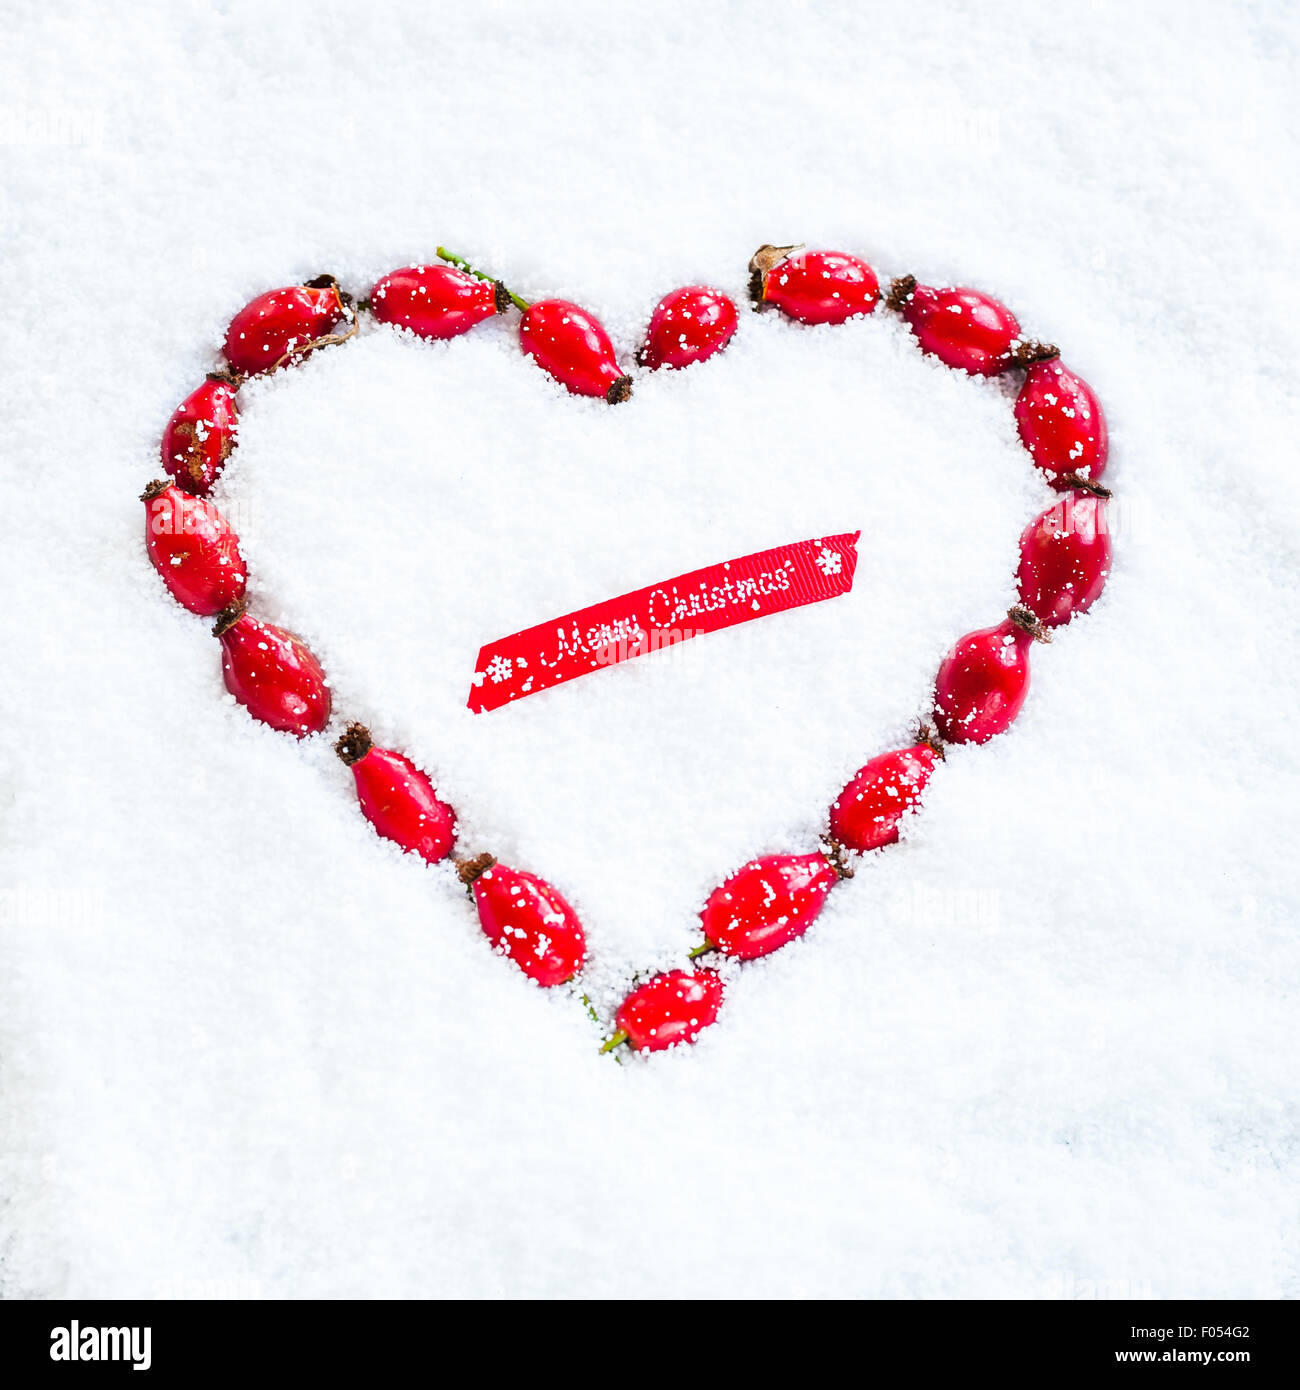 A heart-shaped ghirlanda fatta con rosa canina steso sulla neve, e il pezzo di nastro rosso dicendo Buon Natale Foto Stock